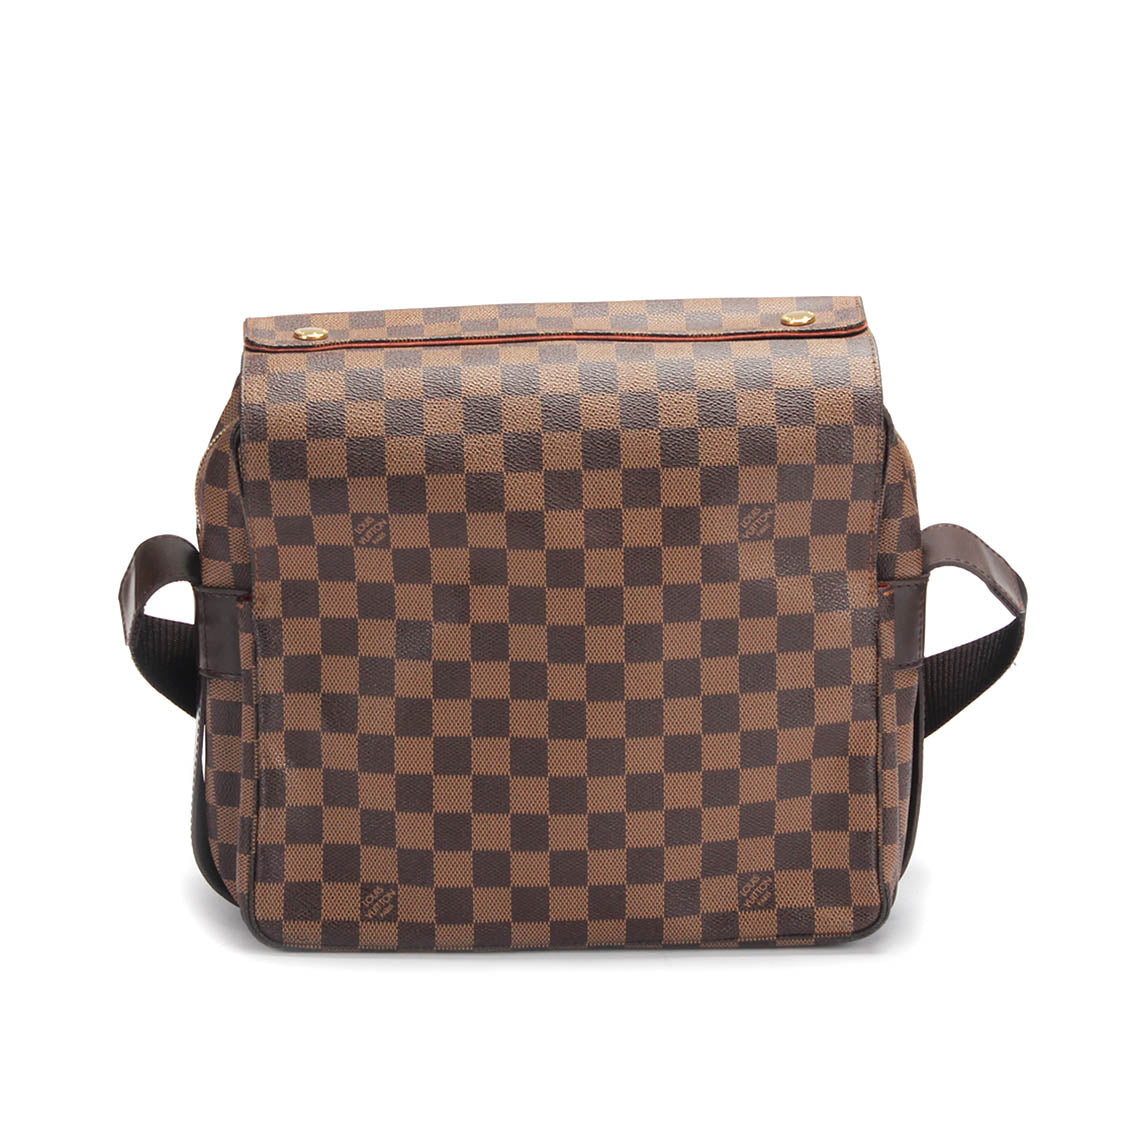 Louis Vuitton Damier Ebene Naviglio Canvas Crossbody Bag in Good condition